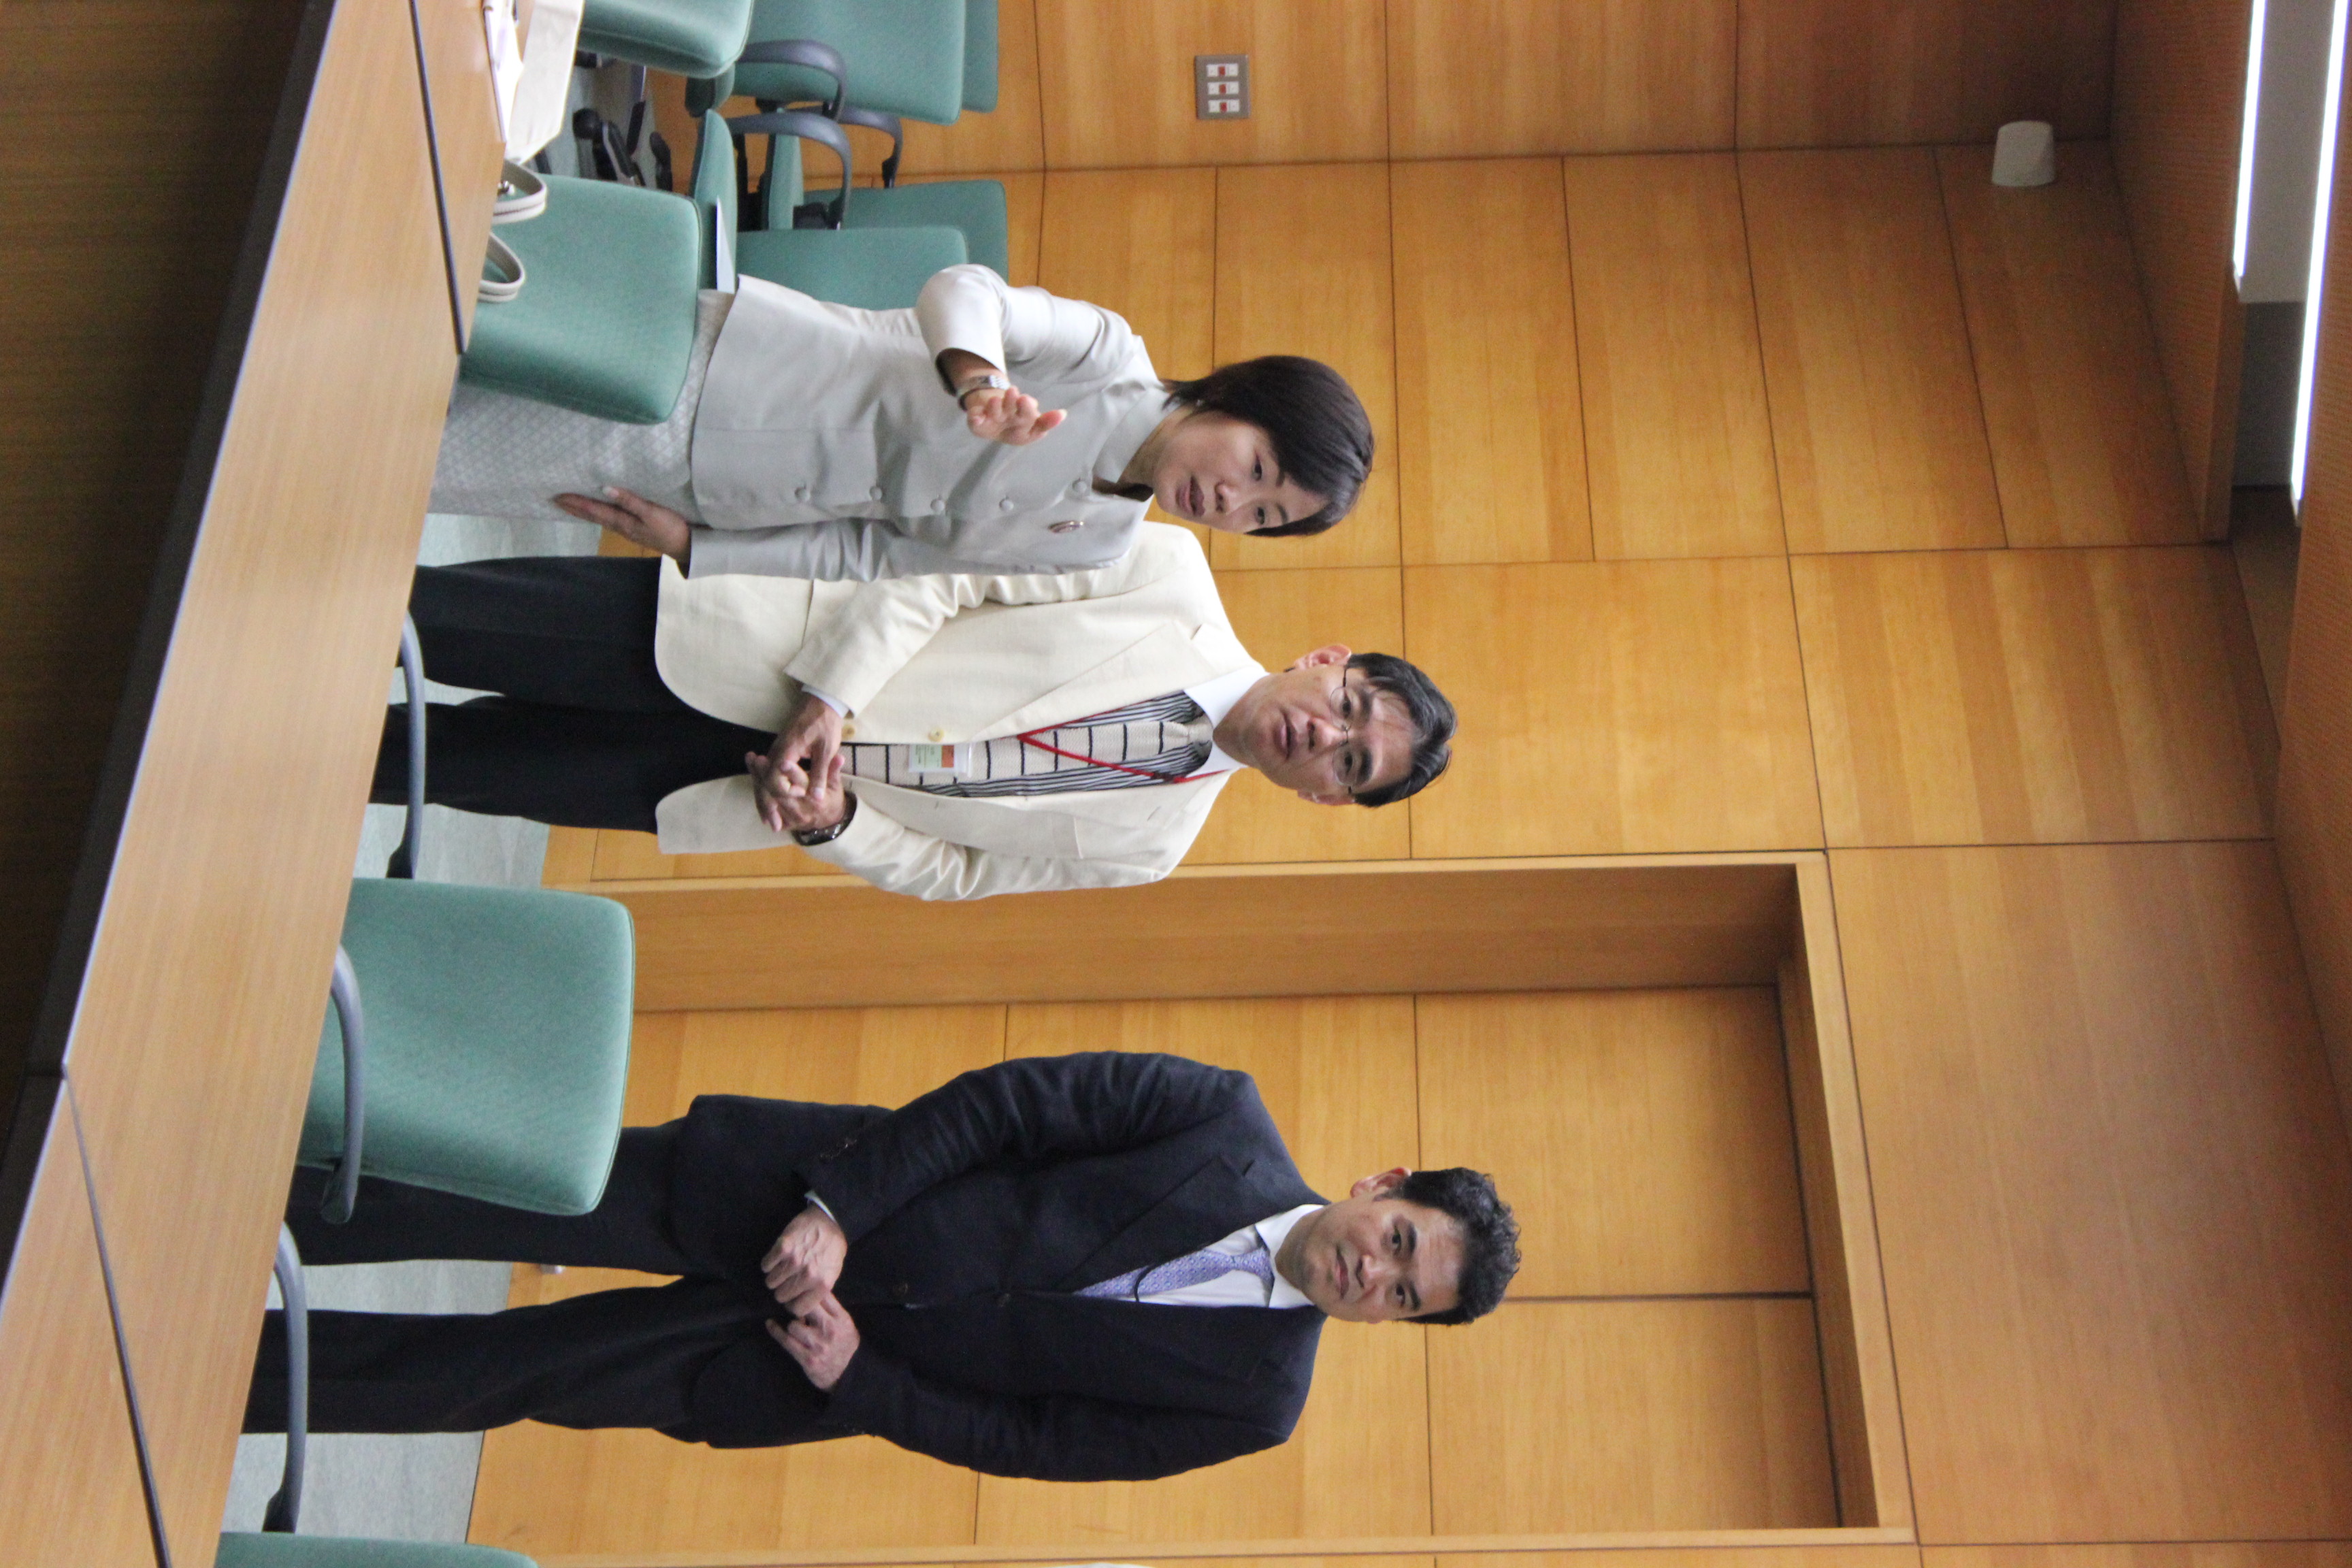 รายงานการเดินทางไปราชการ ณ ประเทศญี่ปุ่น ระหว่างวันที่ 6 – 11 ตุลาคม 2556 โครงการอนุรักษ์บานไม้ประดับมุกศิลปะญี่ปุ่น บานประตูหน้าต่างพระวิหารหลวงวัดราชประดิษฐสถิตมหาสีมาราม